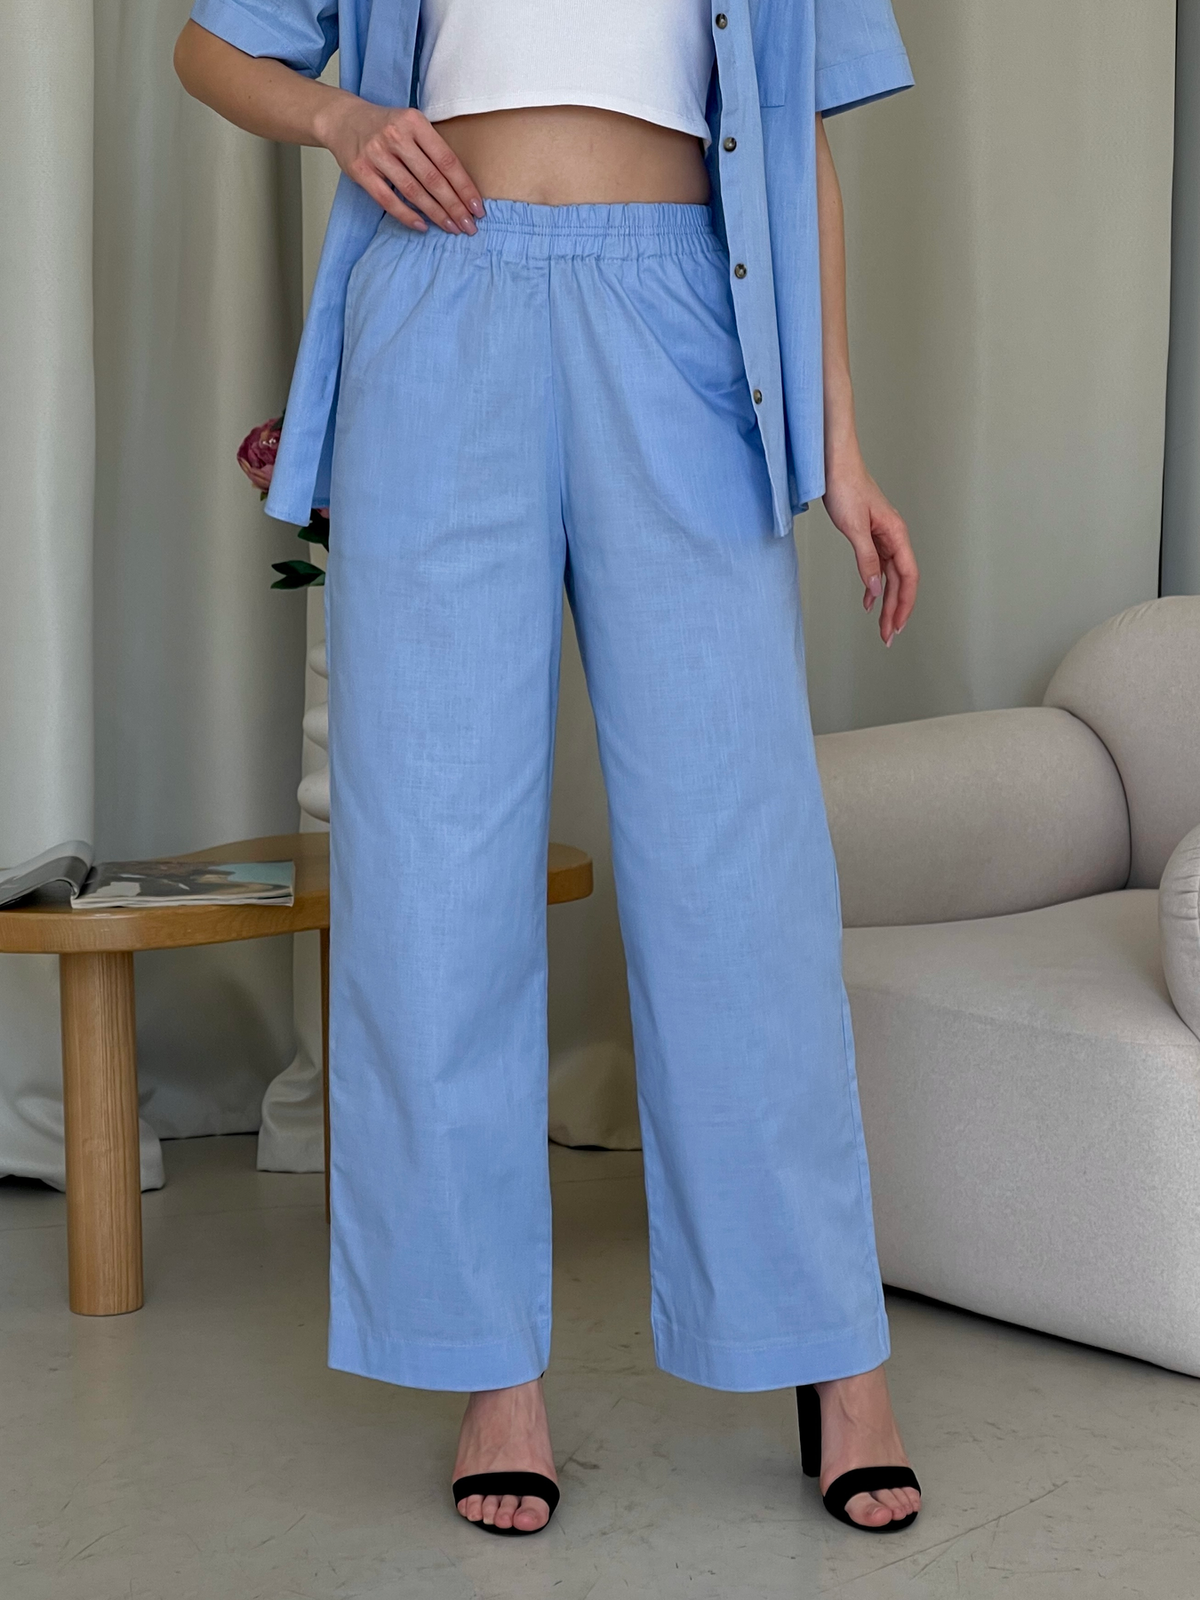 Купить Льняной костюм с штанами палаццо и рубашкой голубой Лорен 100001207 размер 42-44 (S-M) в интернет-магазине